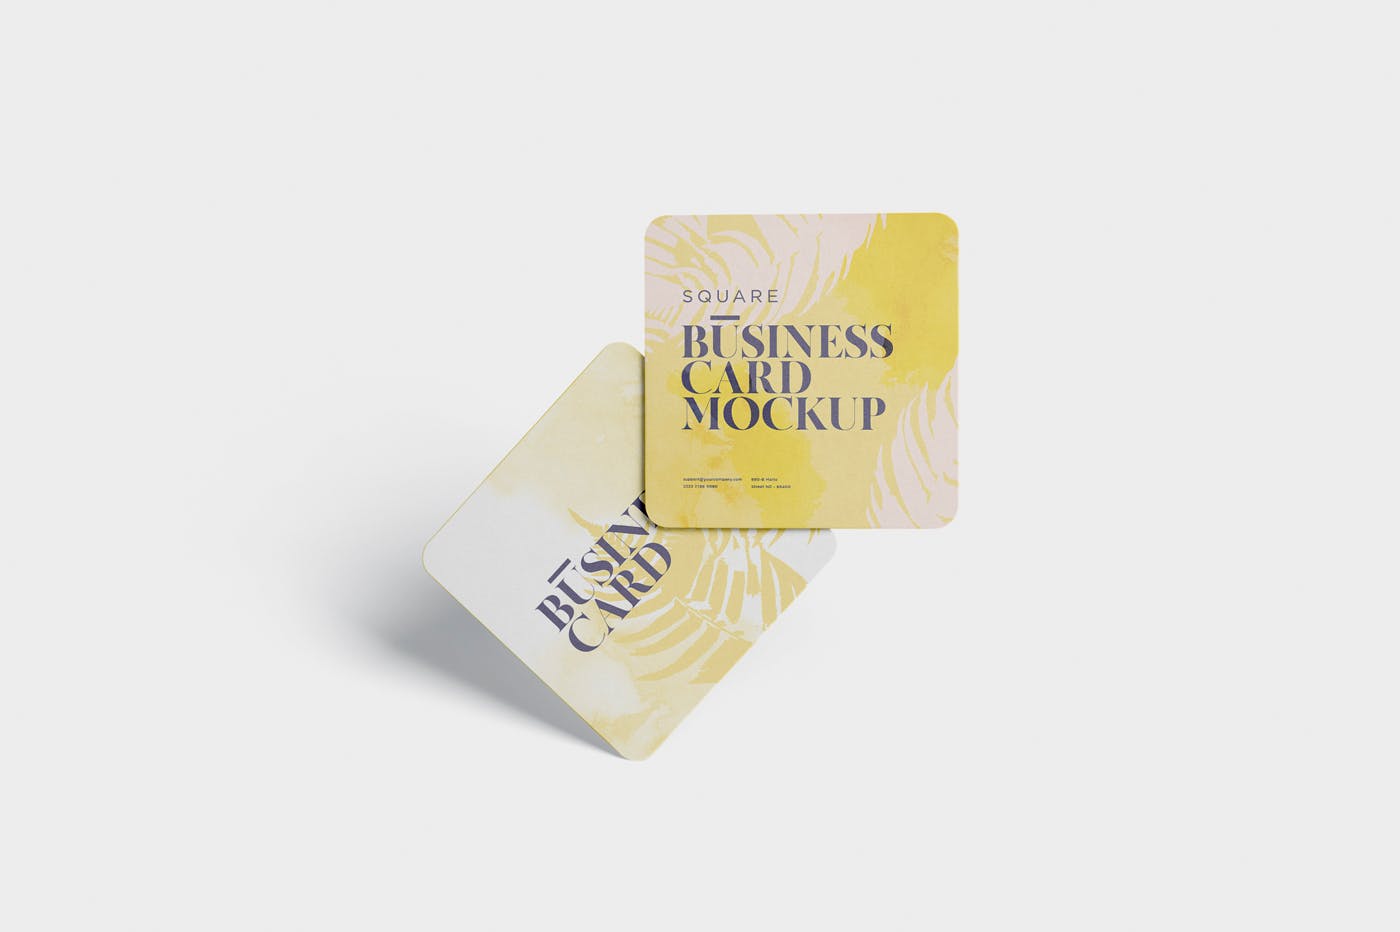 圆角设计风格企业名片效果图素材中国精选 Business Card Mockup – Square Round Corner插图(2)